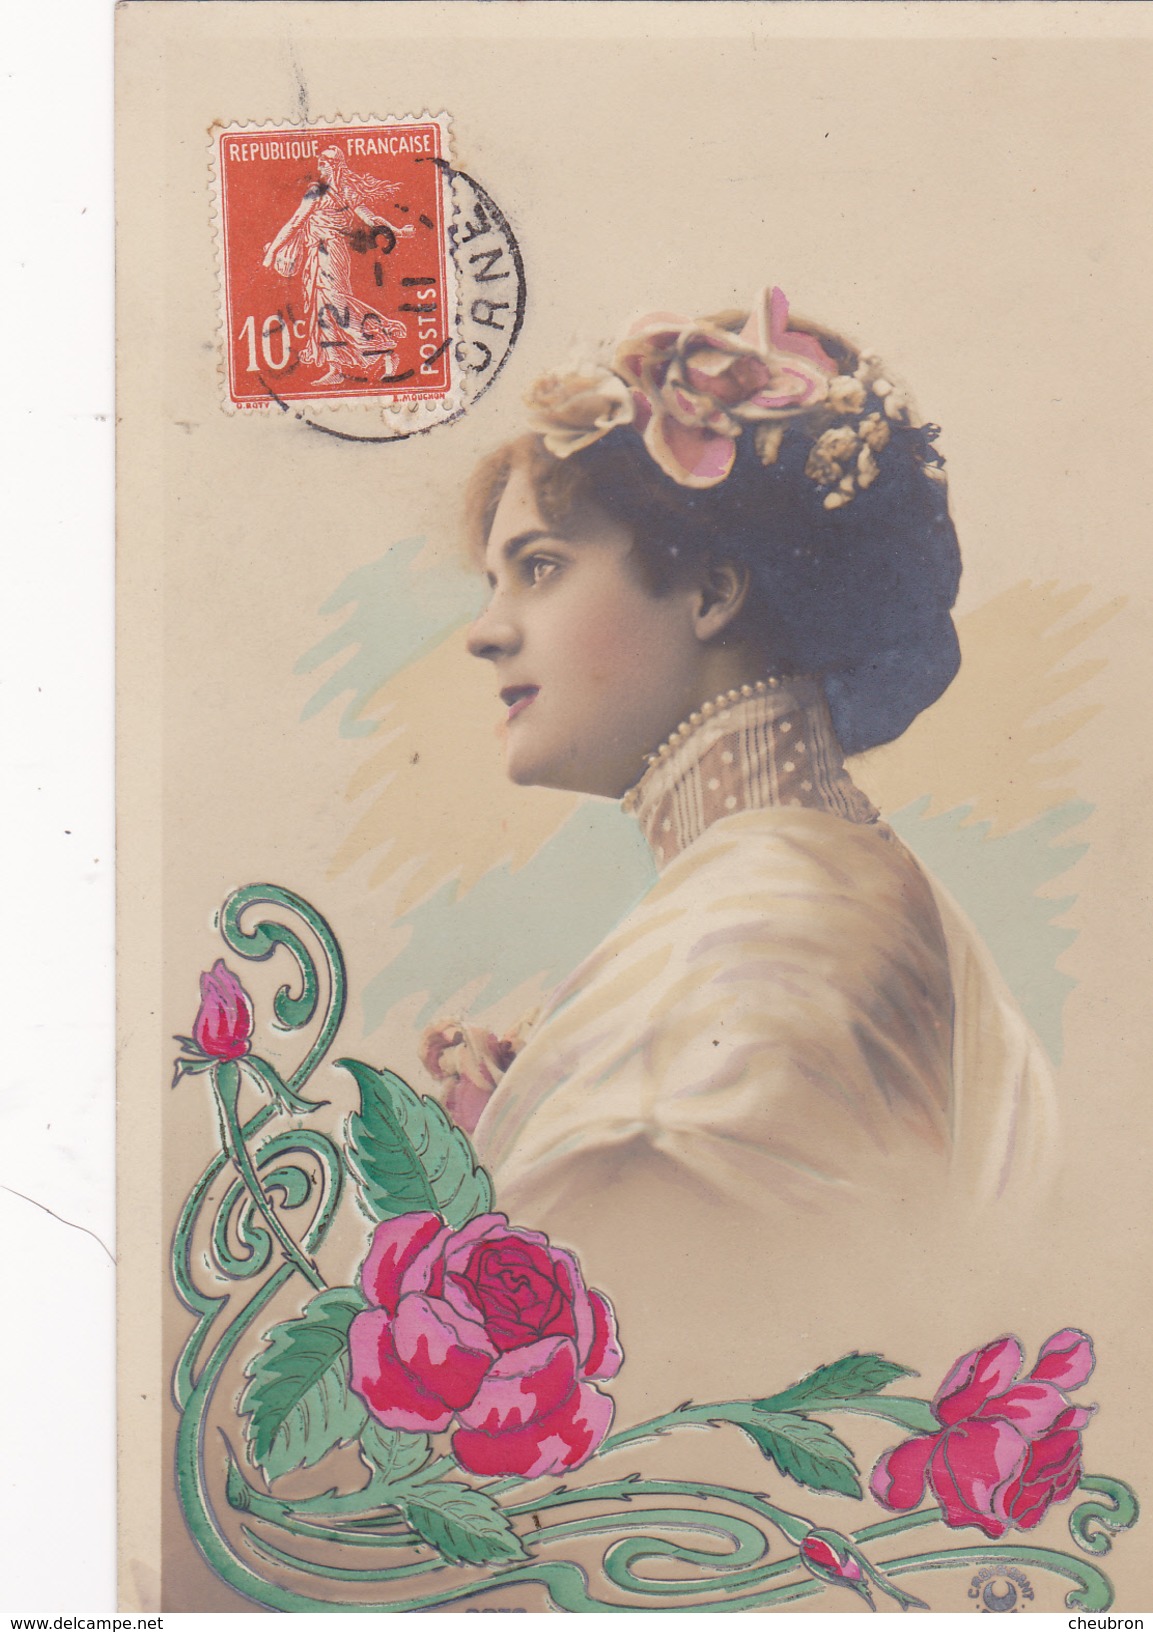 61. CETON (ENVOI DE) CARTE FANTAISIE. CPA . PORTRAIT DE FEMME. ANNÉE 1911 - Femmes